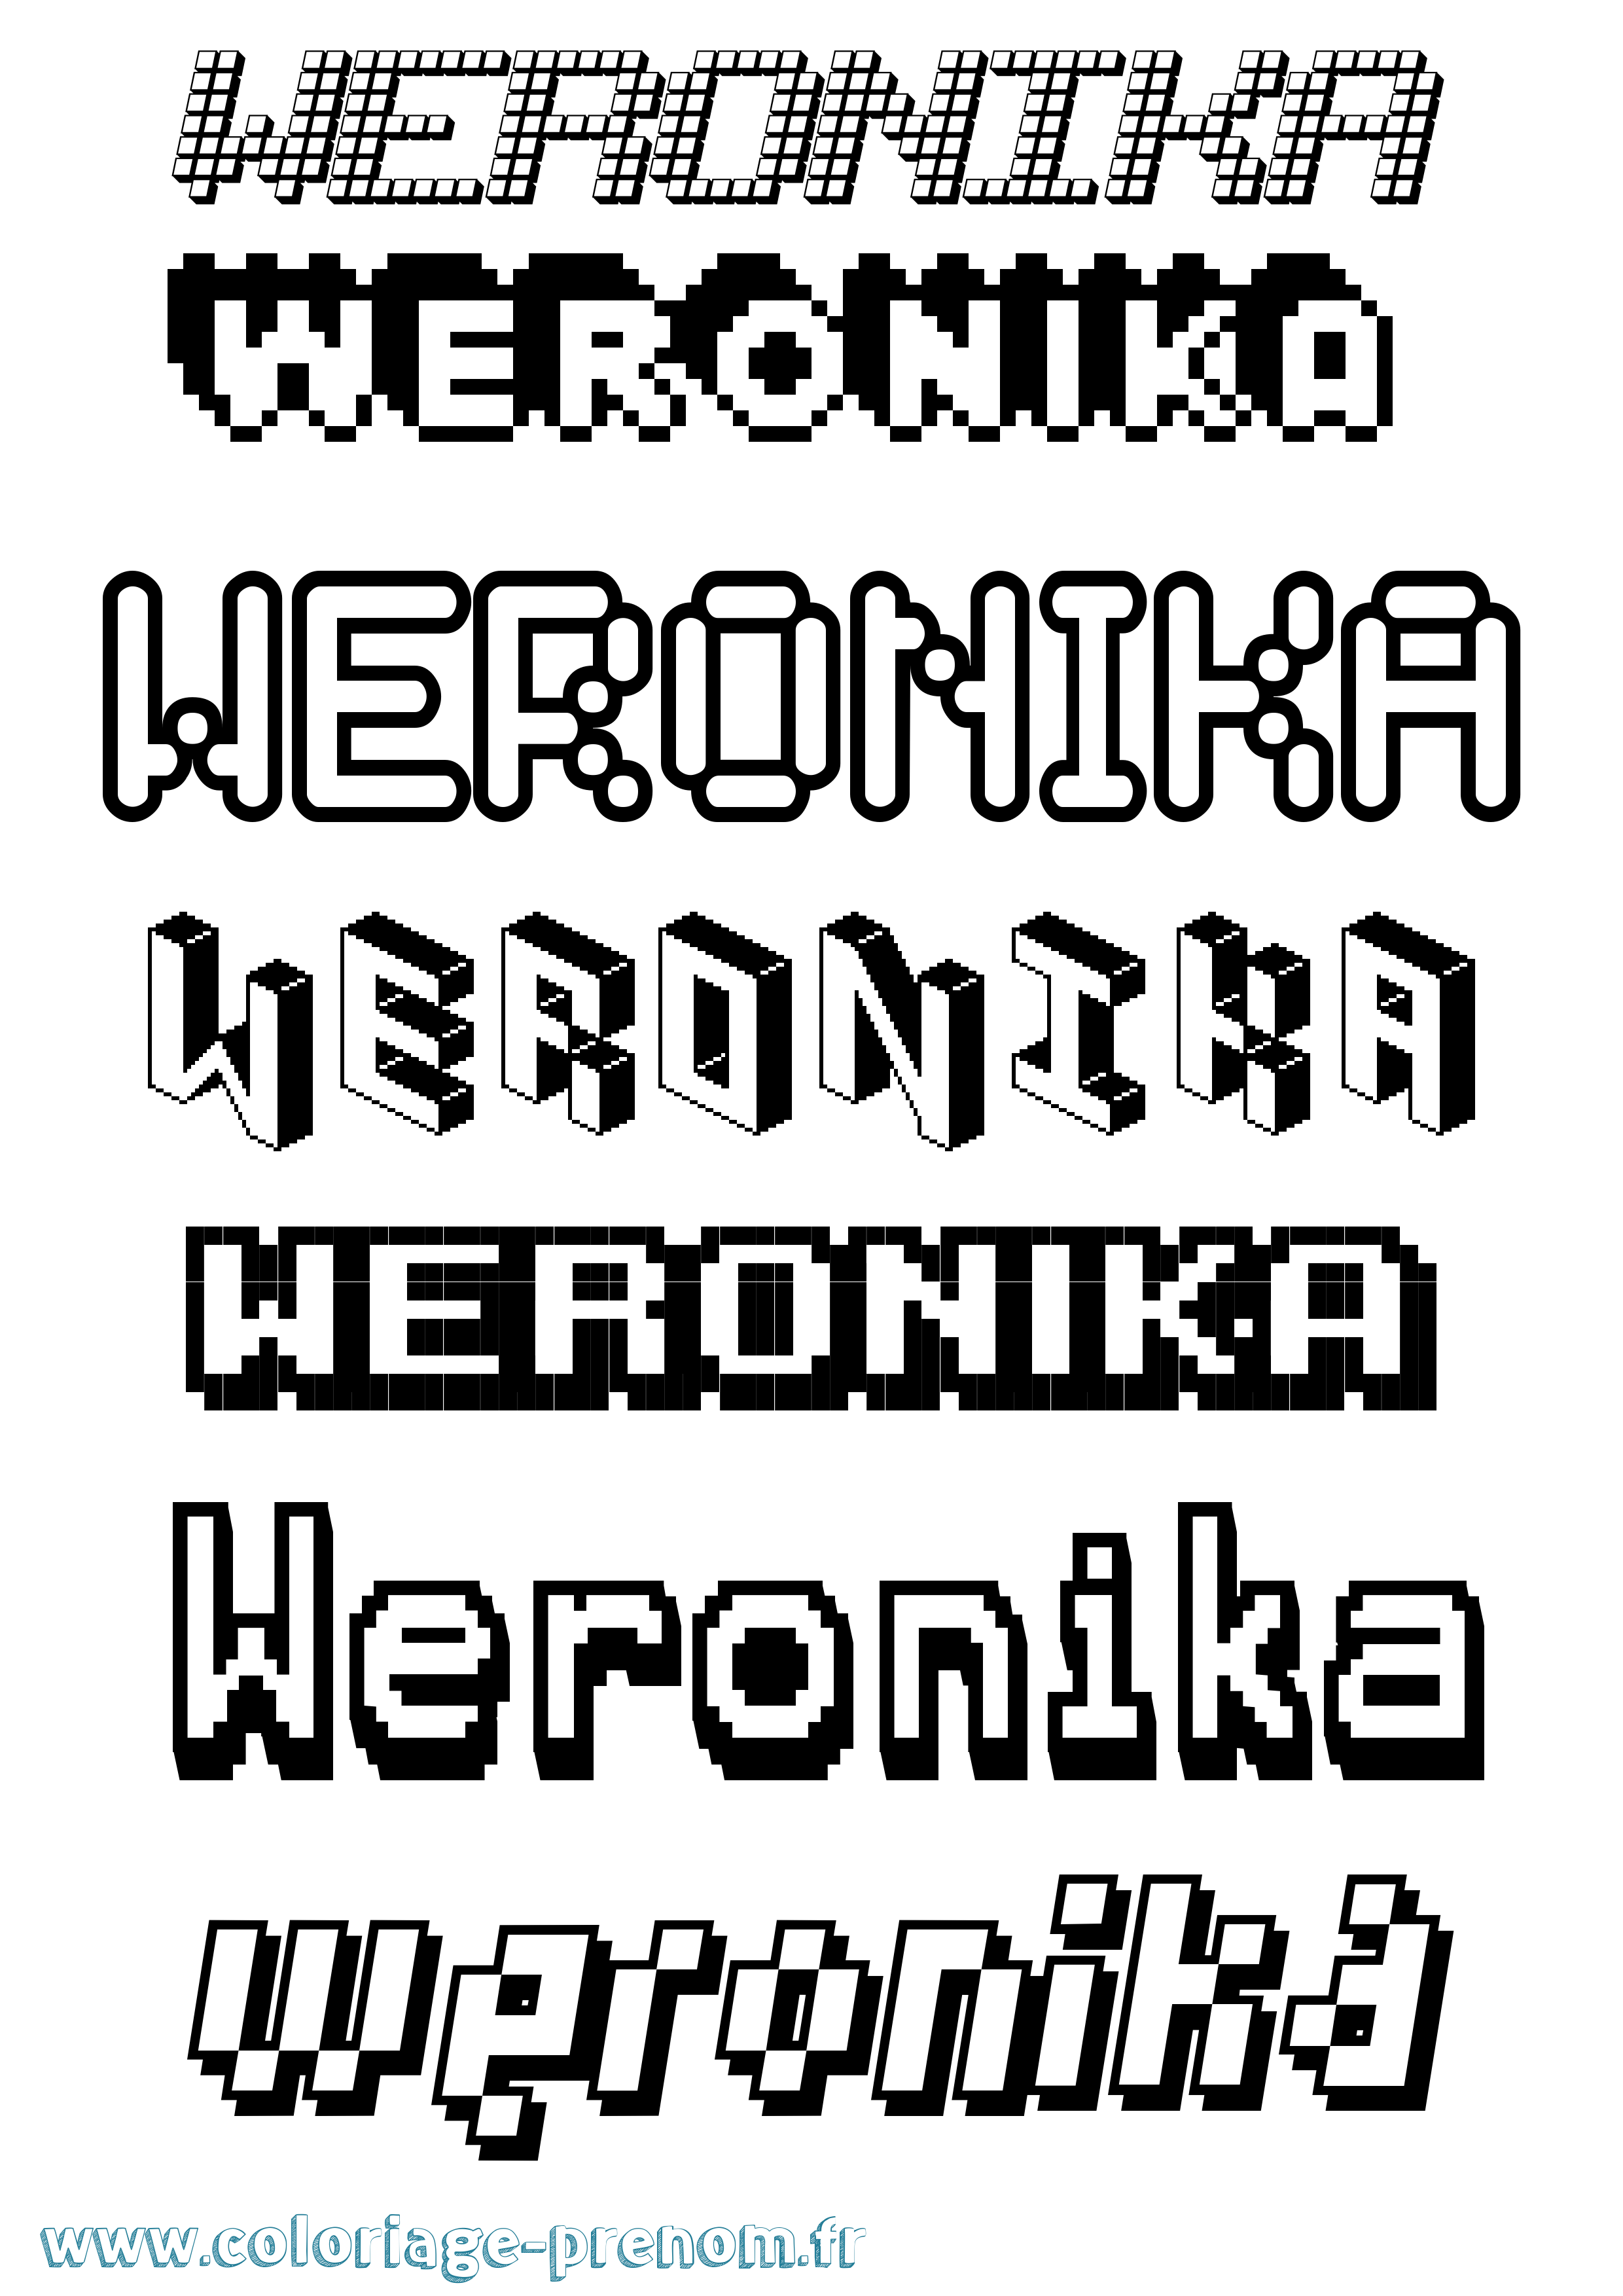 Coloriage prénom Weronika Pixel